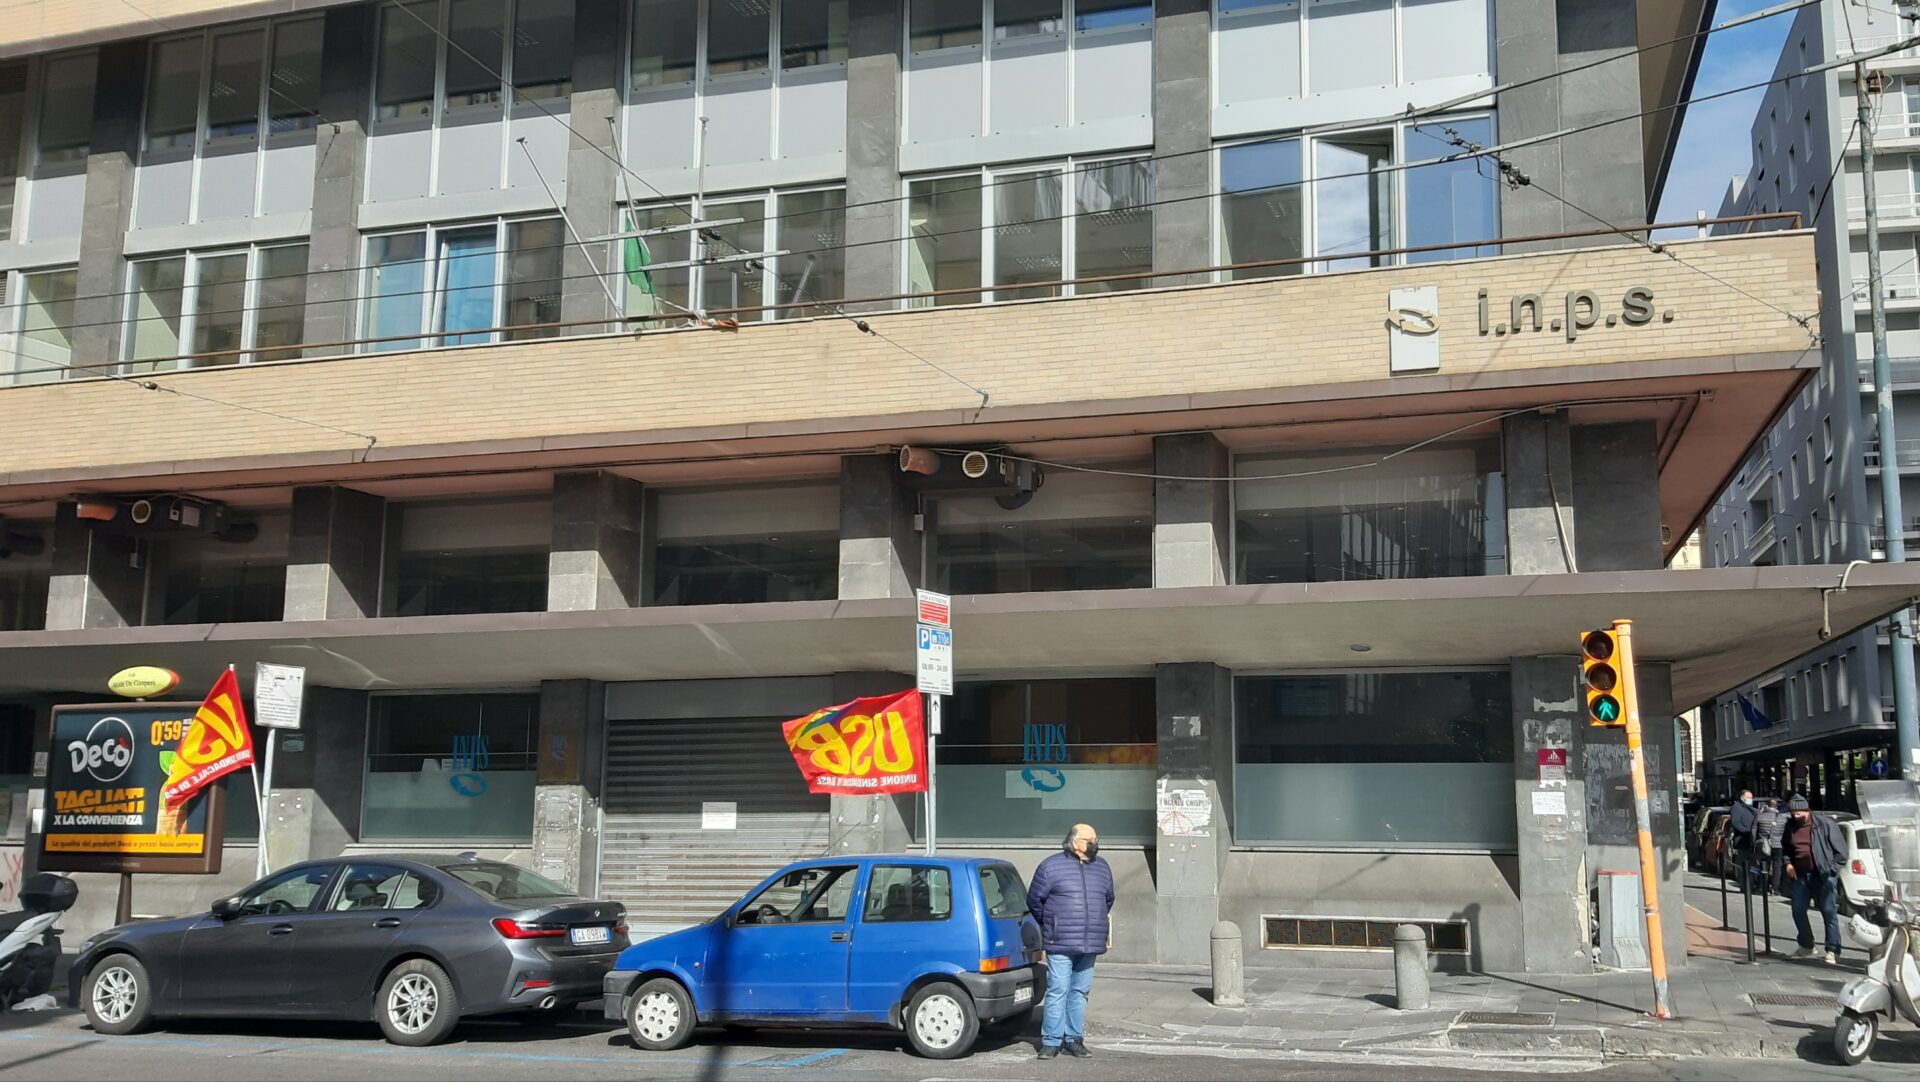 Reddito di Cittadinanza, oggi attese proteste alle sedi Inps di Napoli. Grande tensione in città, allerta massima tra le forze dell'ordine